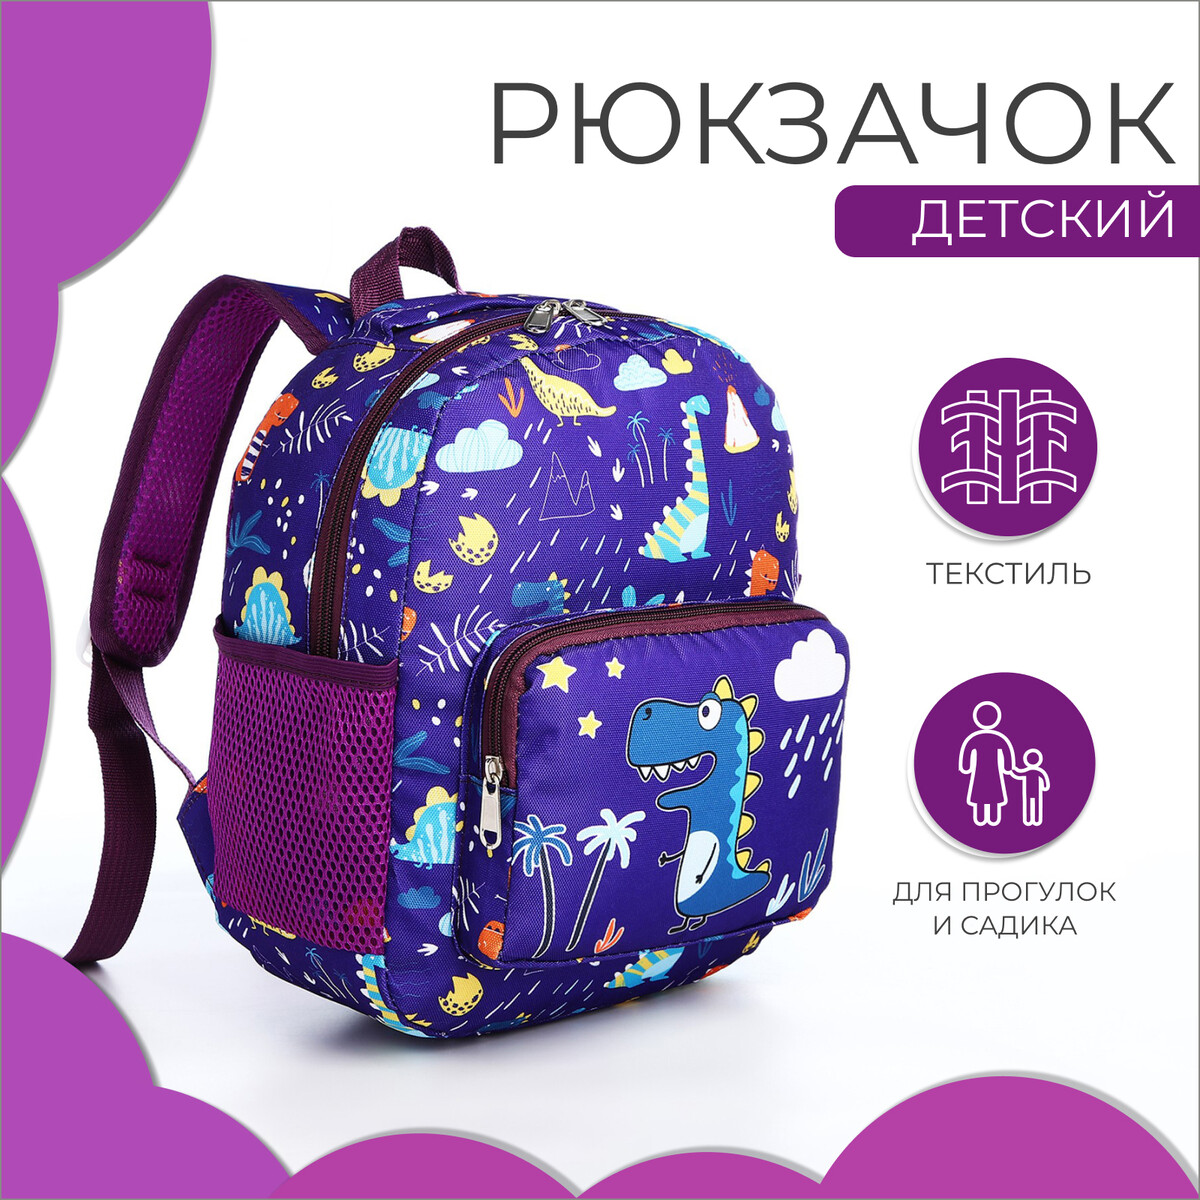 Рюкзак детский на молнии, 3 наружных кармана, цвет фиолетовый сумка дорожная на молнии 2 наружных кармана держатель для чемодана длинный ремень фиолетовый